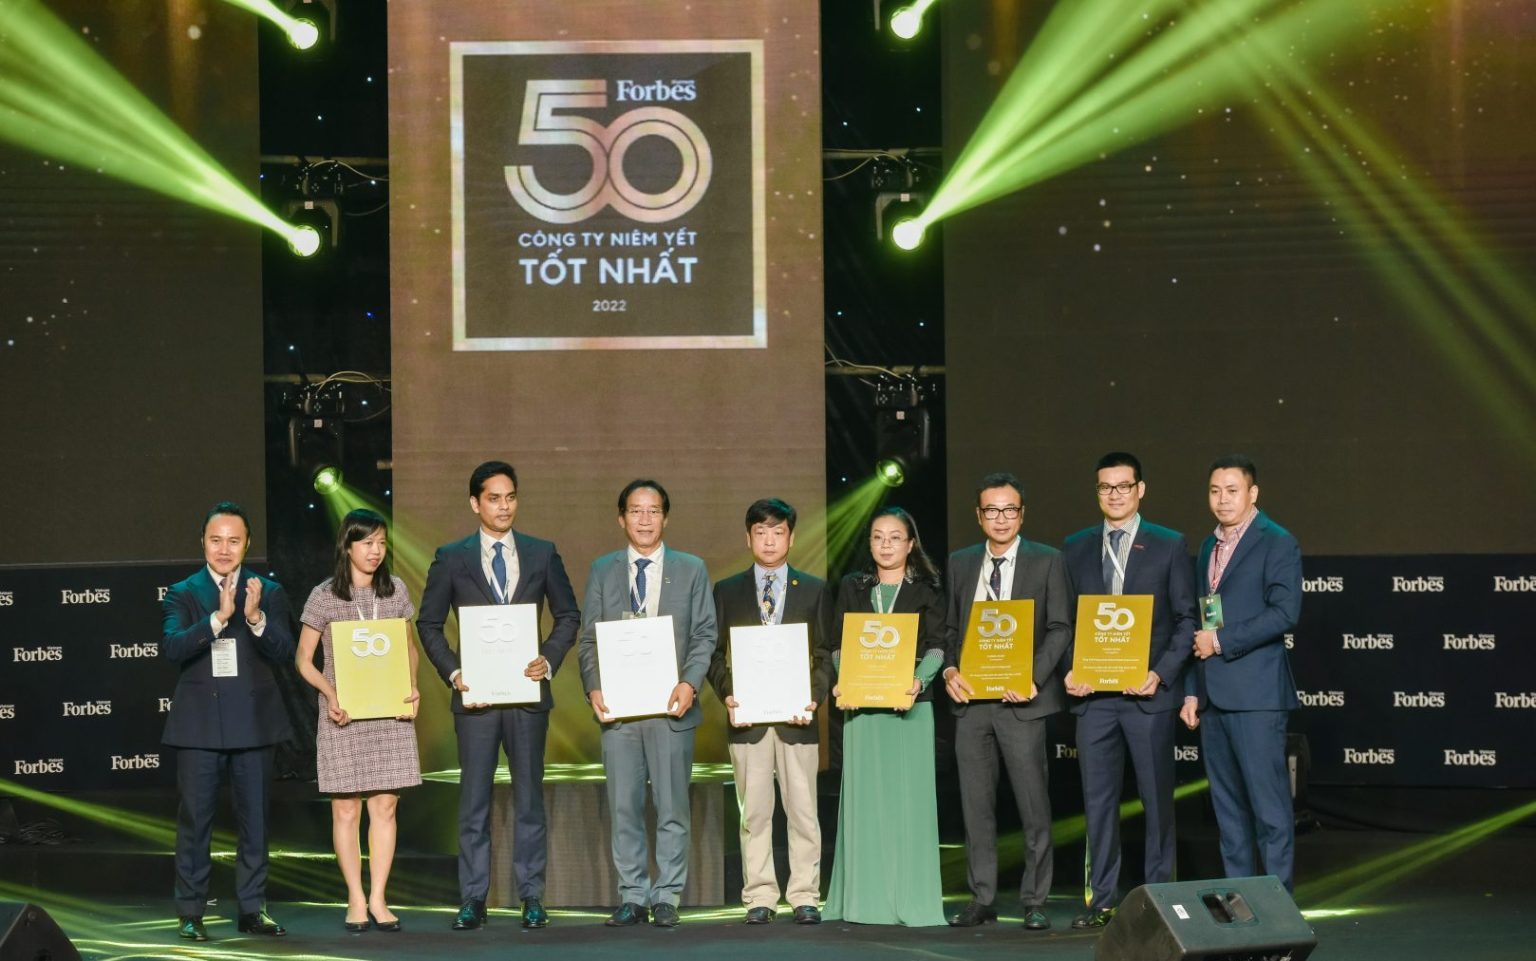 HAH được vinh danh Top 50 Công ty niêm yết tốt nhất Việt Nam năm 2022